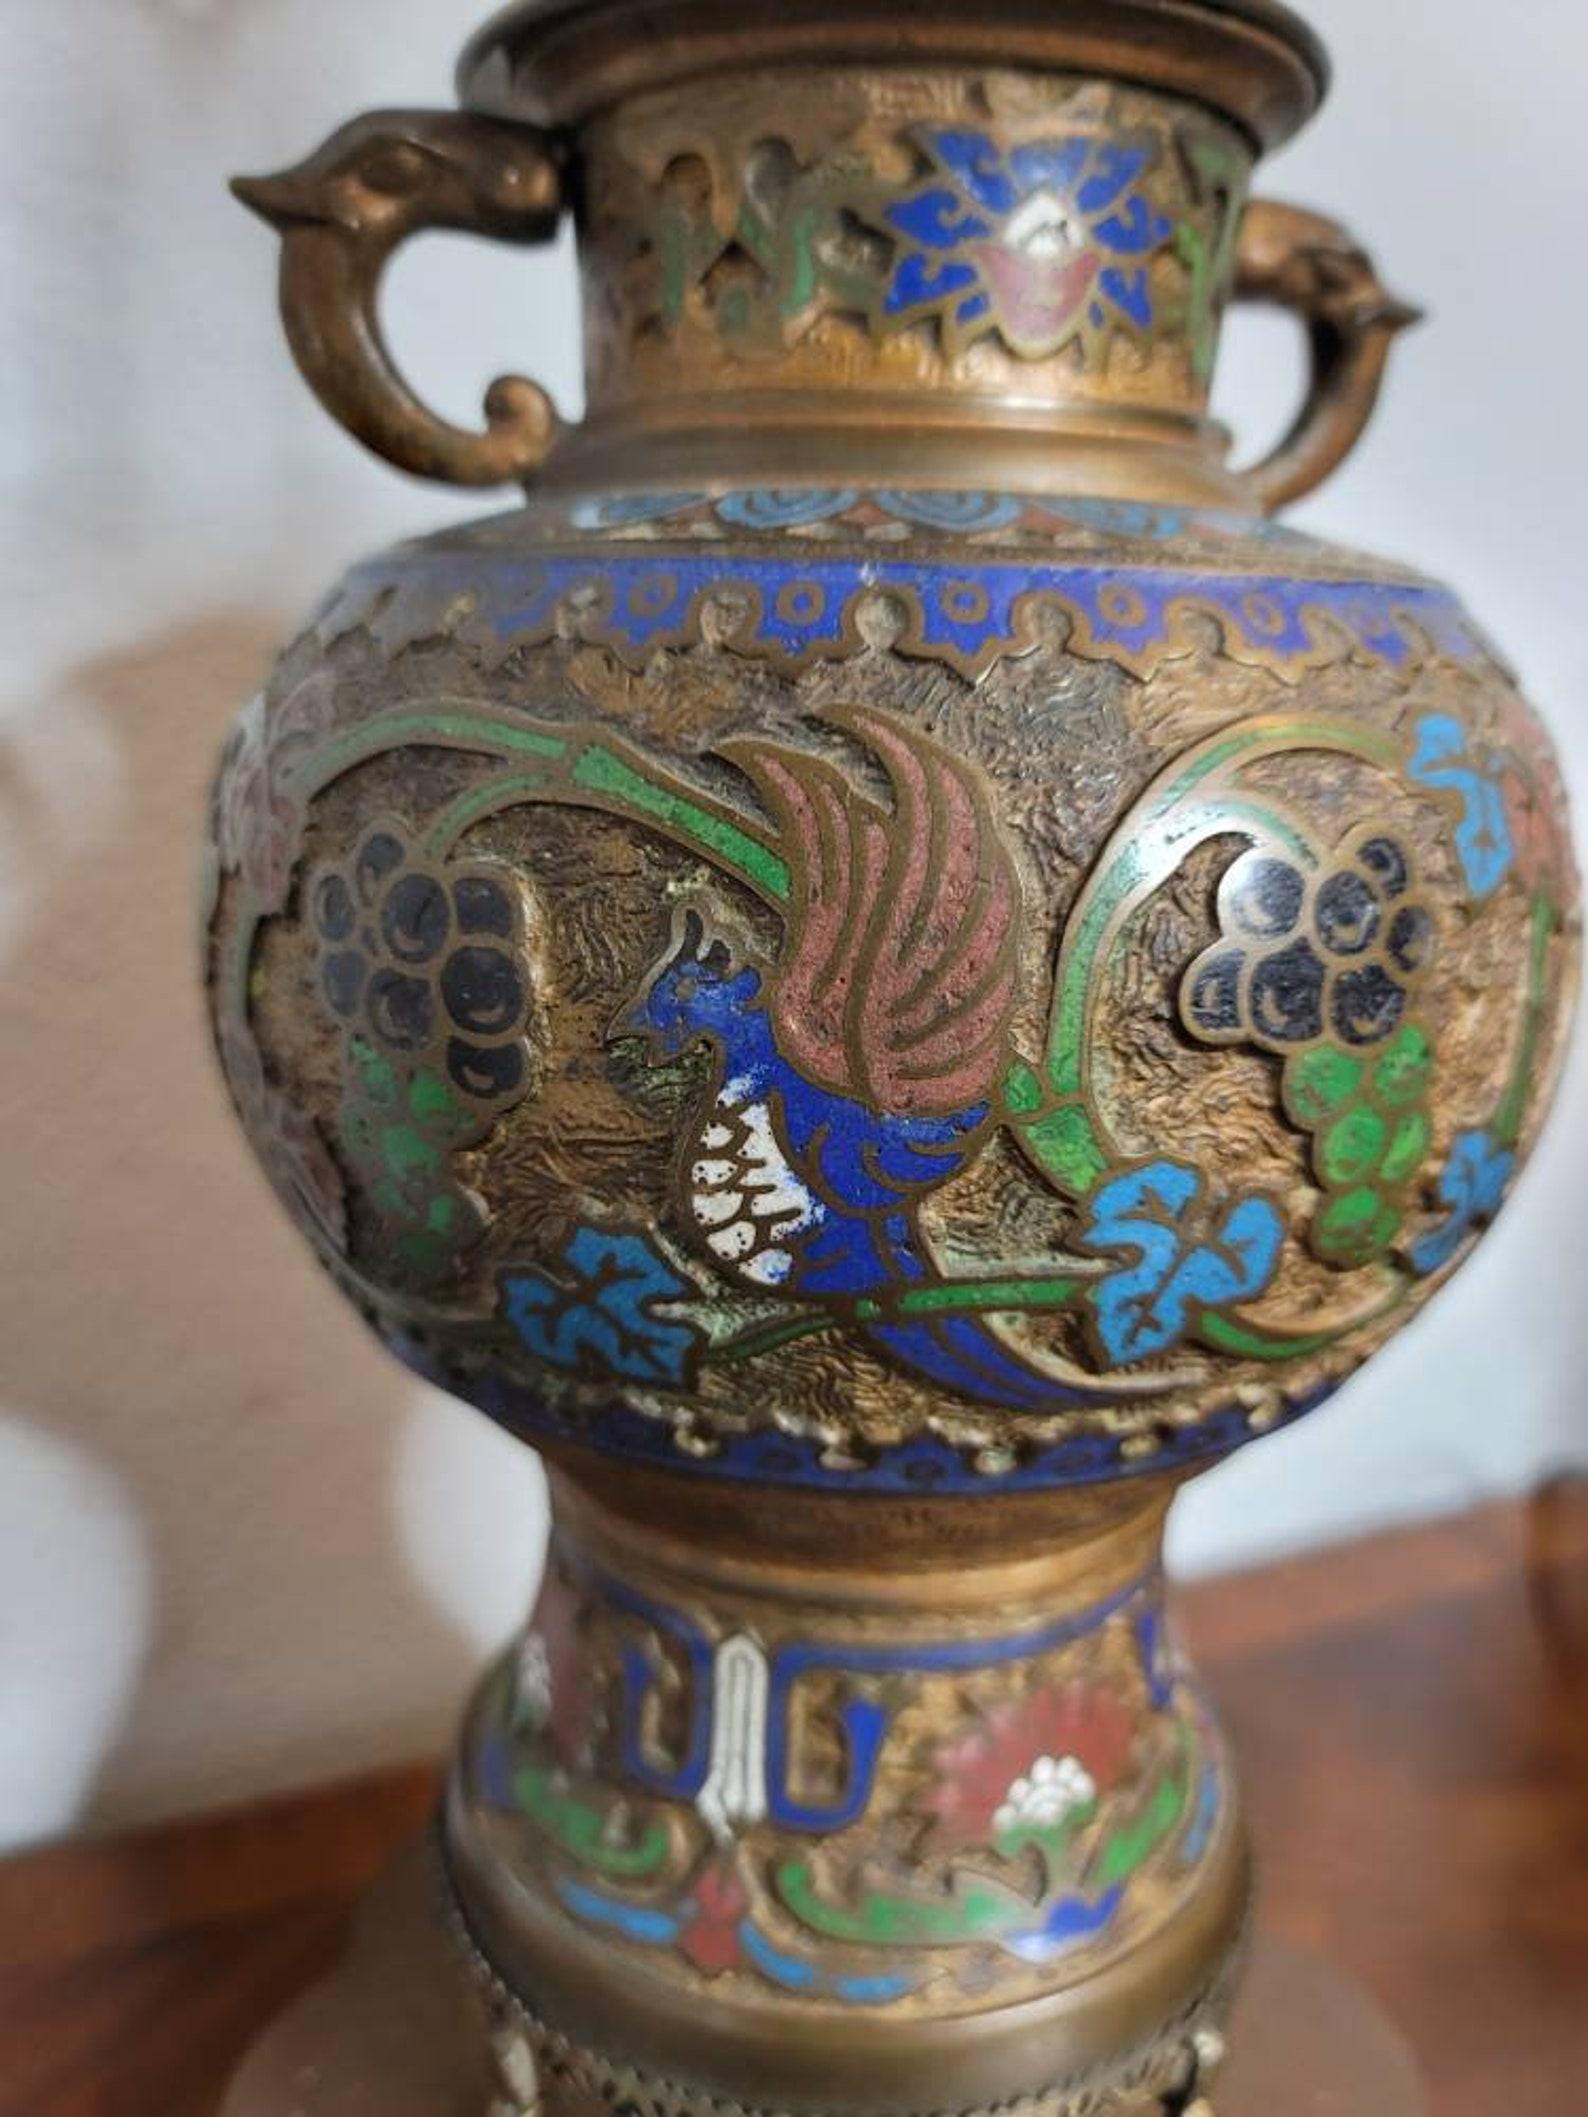 Wir bieten Ihnen ein unverwechselbares Paar ähnlich gestalteter japanischer Urnen im archaischen Stil aus dem späten 19. Jahrhundert, die als äußerst dekorative Tischlampen umfunktioniert wurden. 

Japan, Meiji-Periode (1868-1912), mit späteren